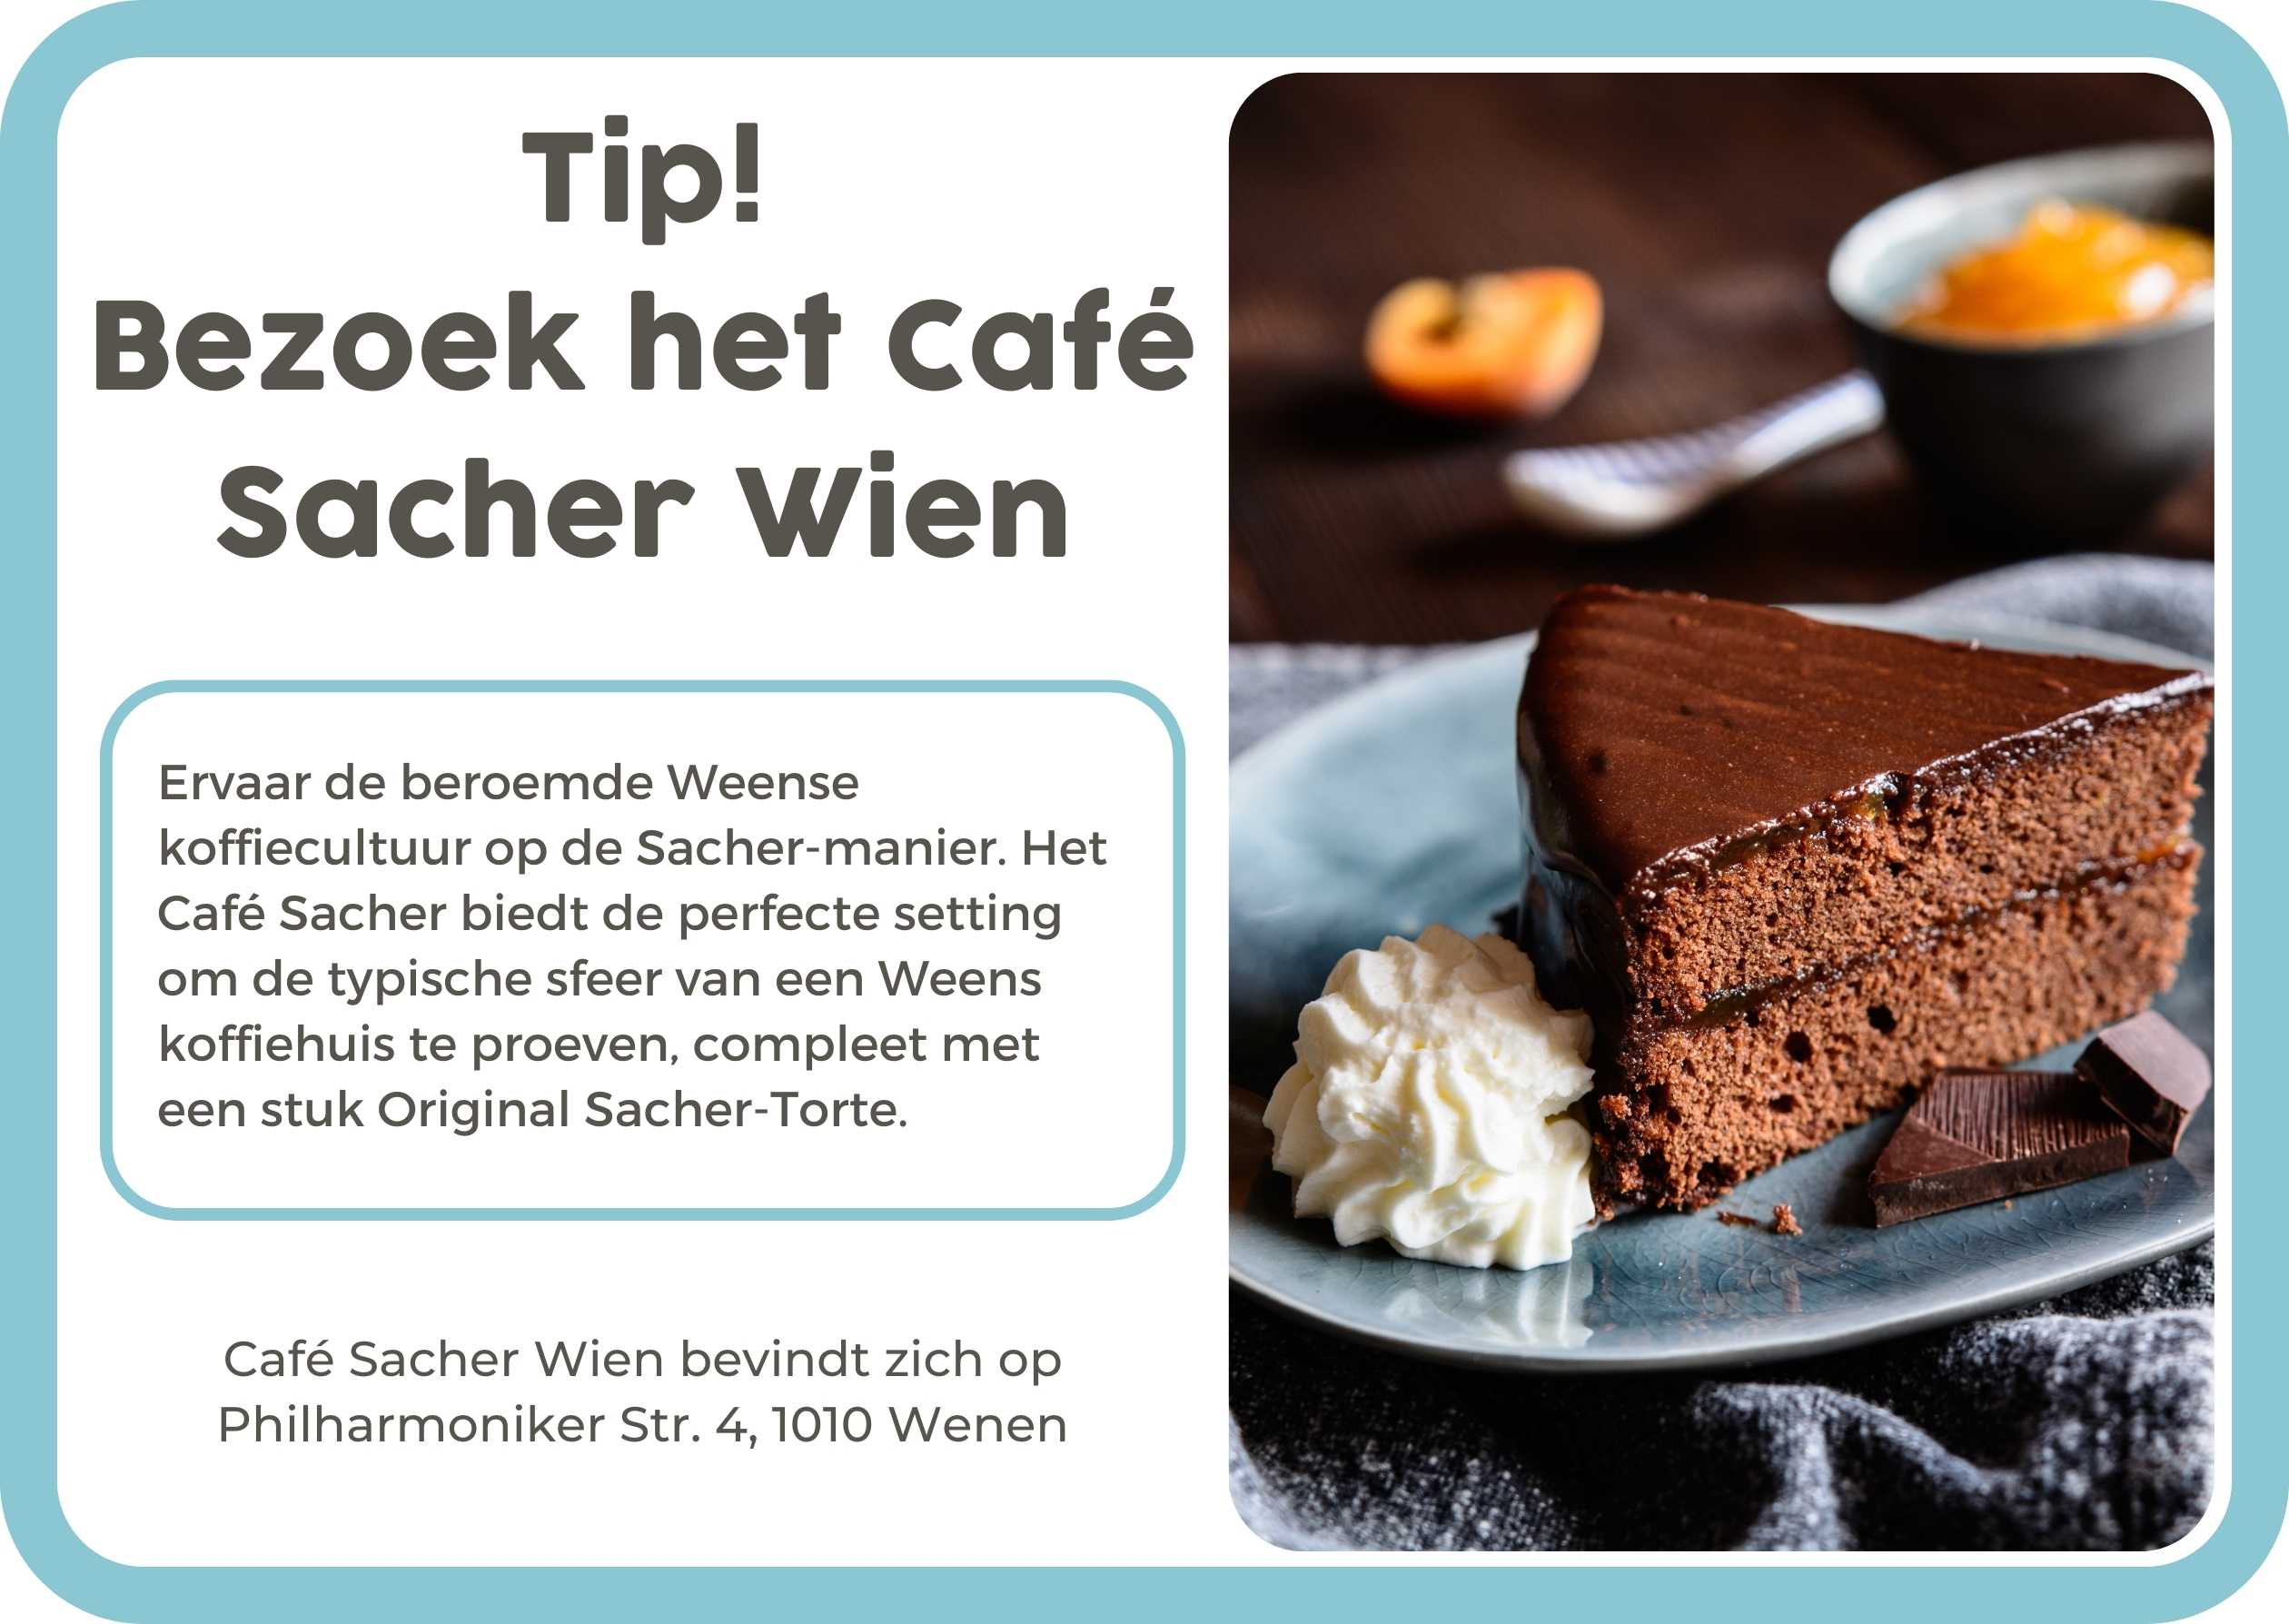 6. Cafe Sacher Wien